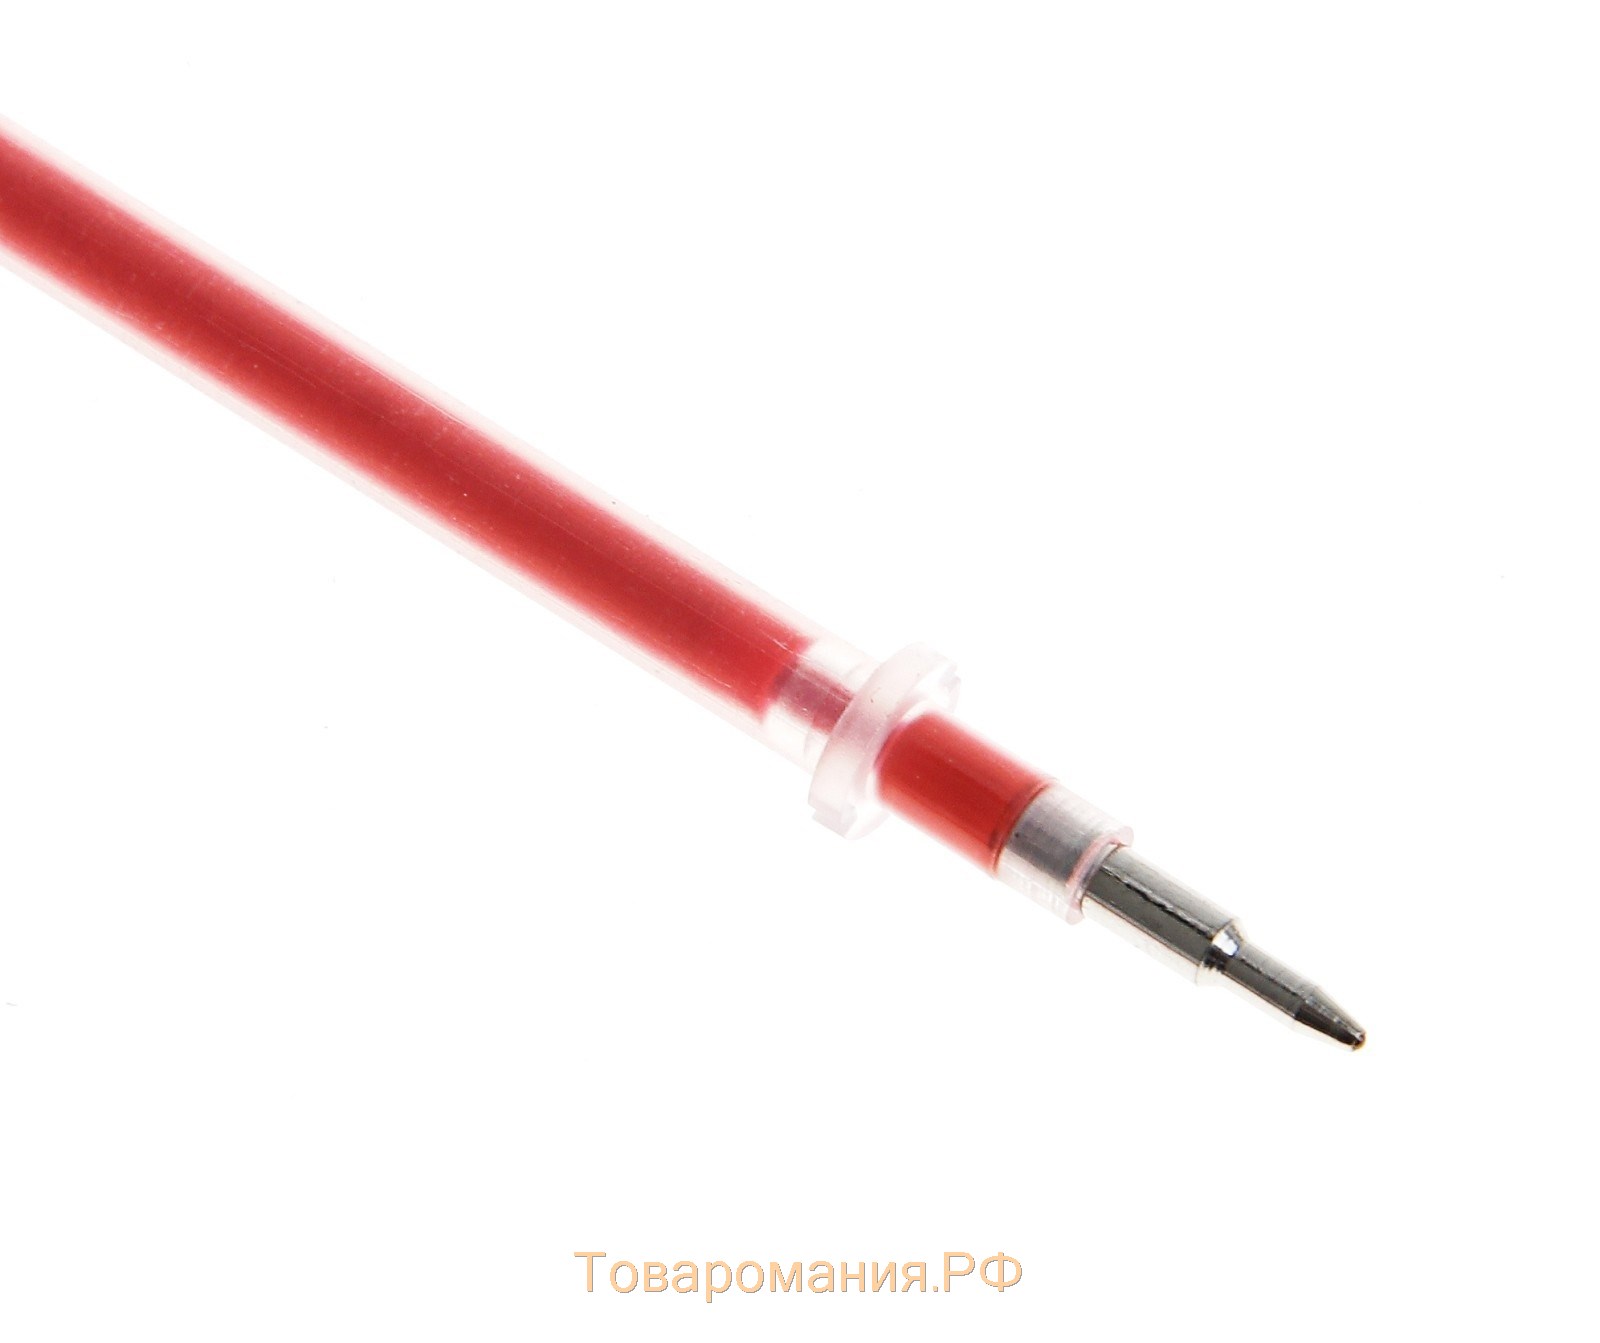 Стержень гелевый 0,5 мм, (игольчатый пишущий узел), 128 мм, чернила красные